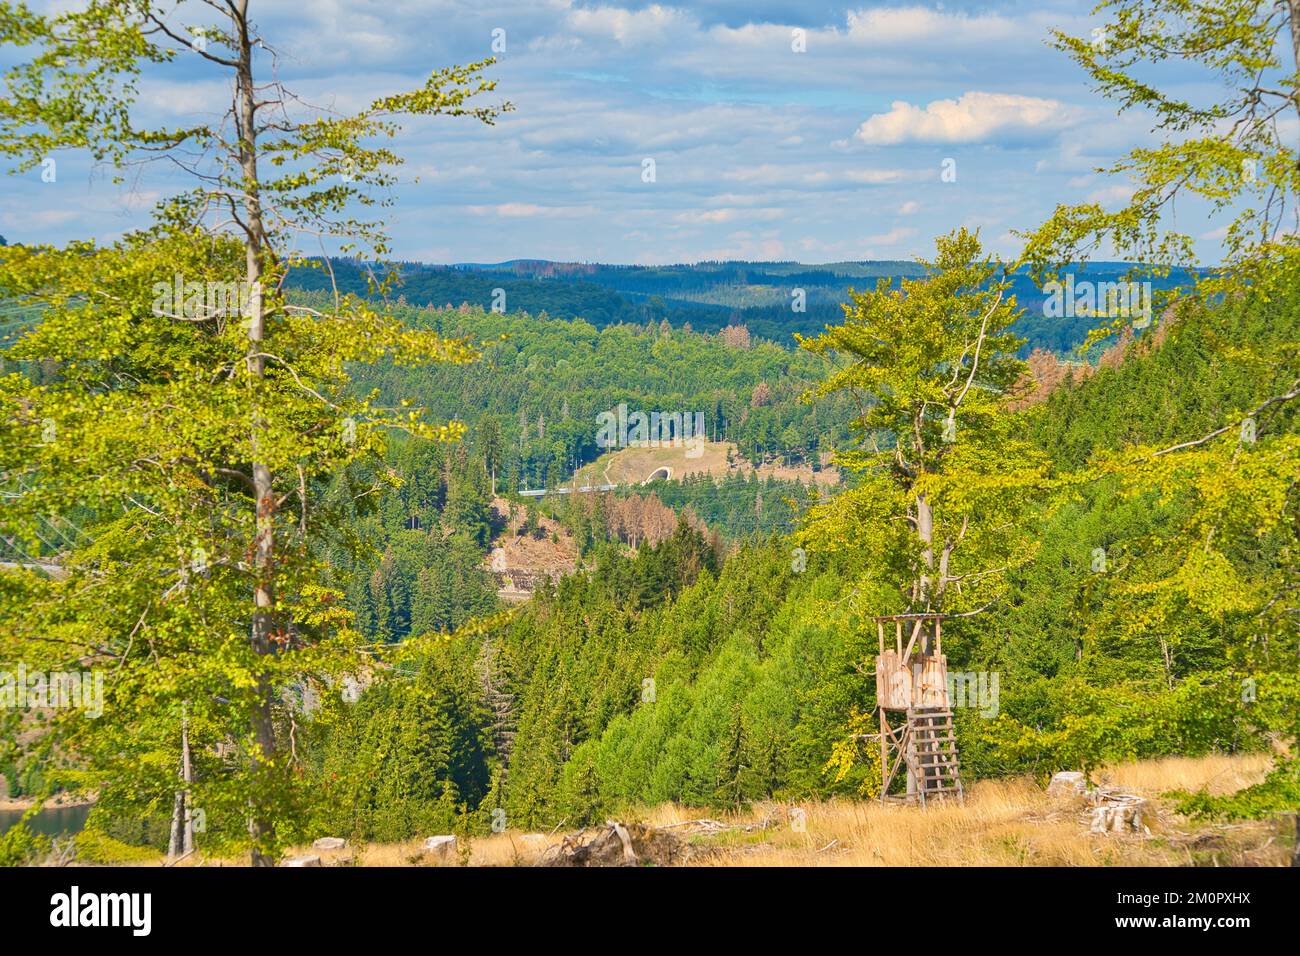 Una antigua torre de observación de madera cerca de zonas verdes bajo un cielo nublado azul en un bosque Foto de stock